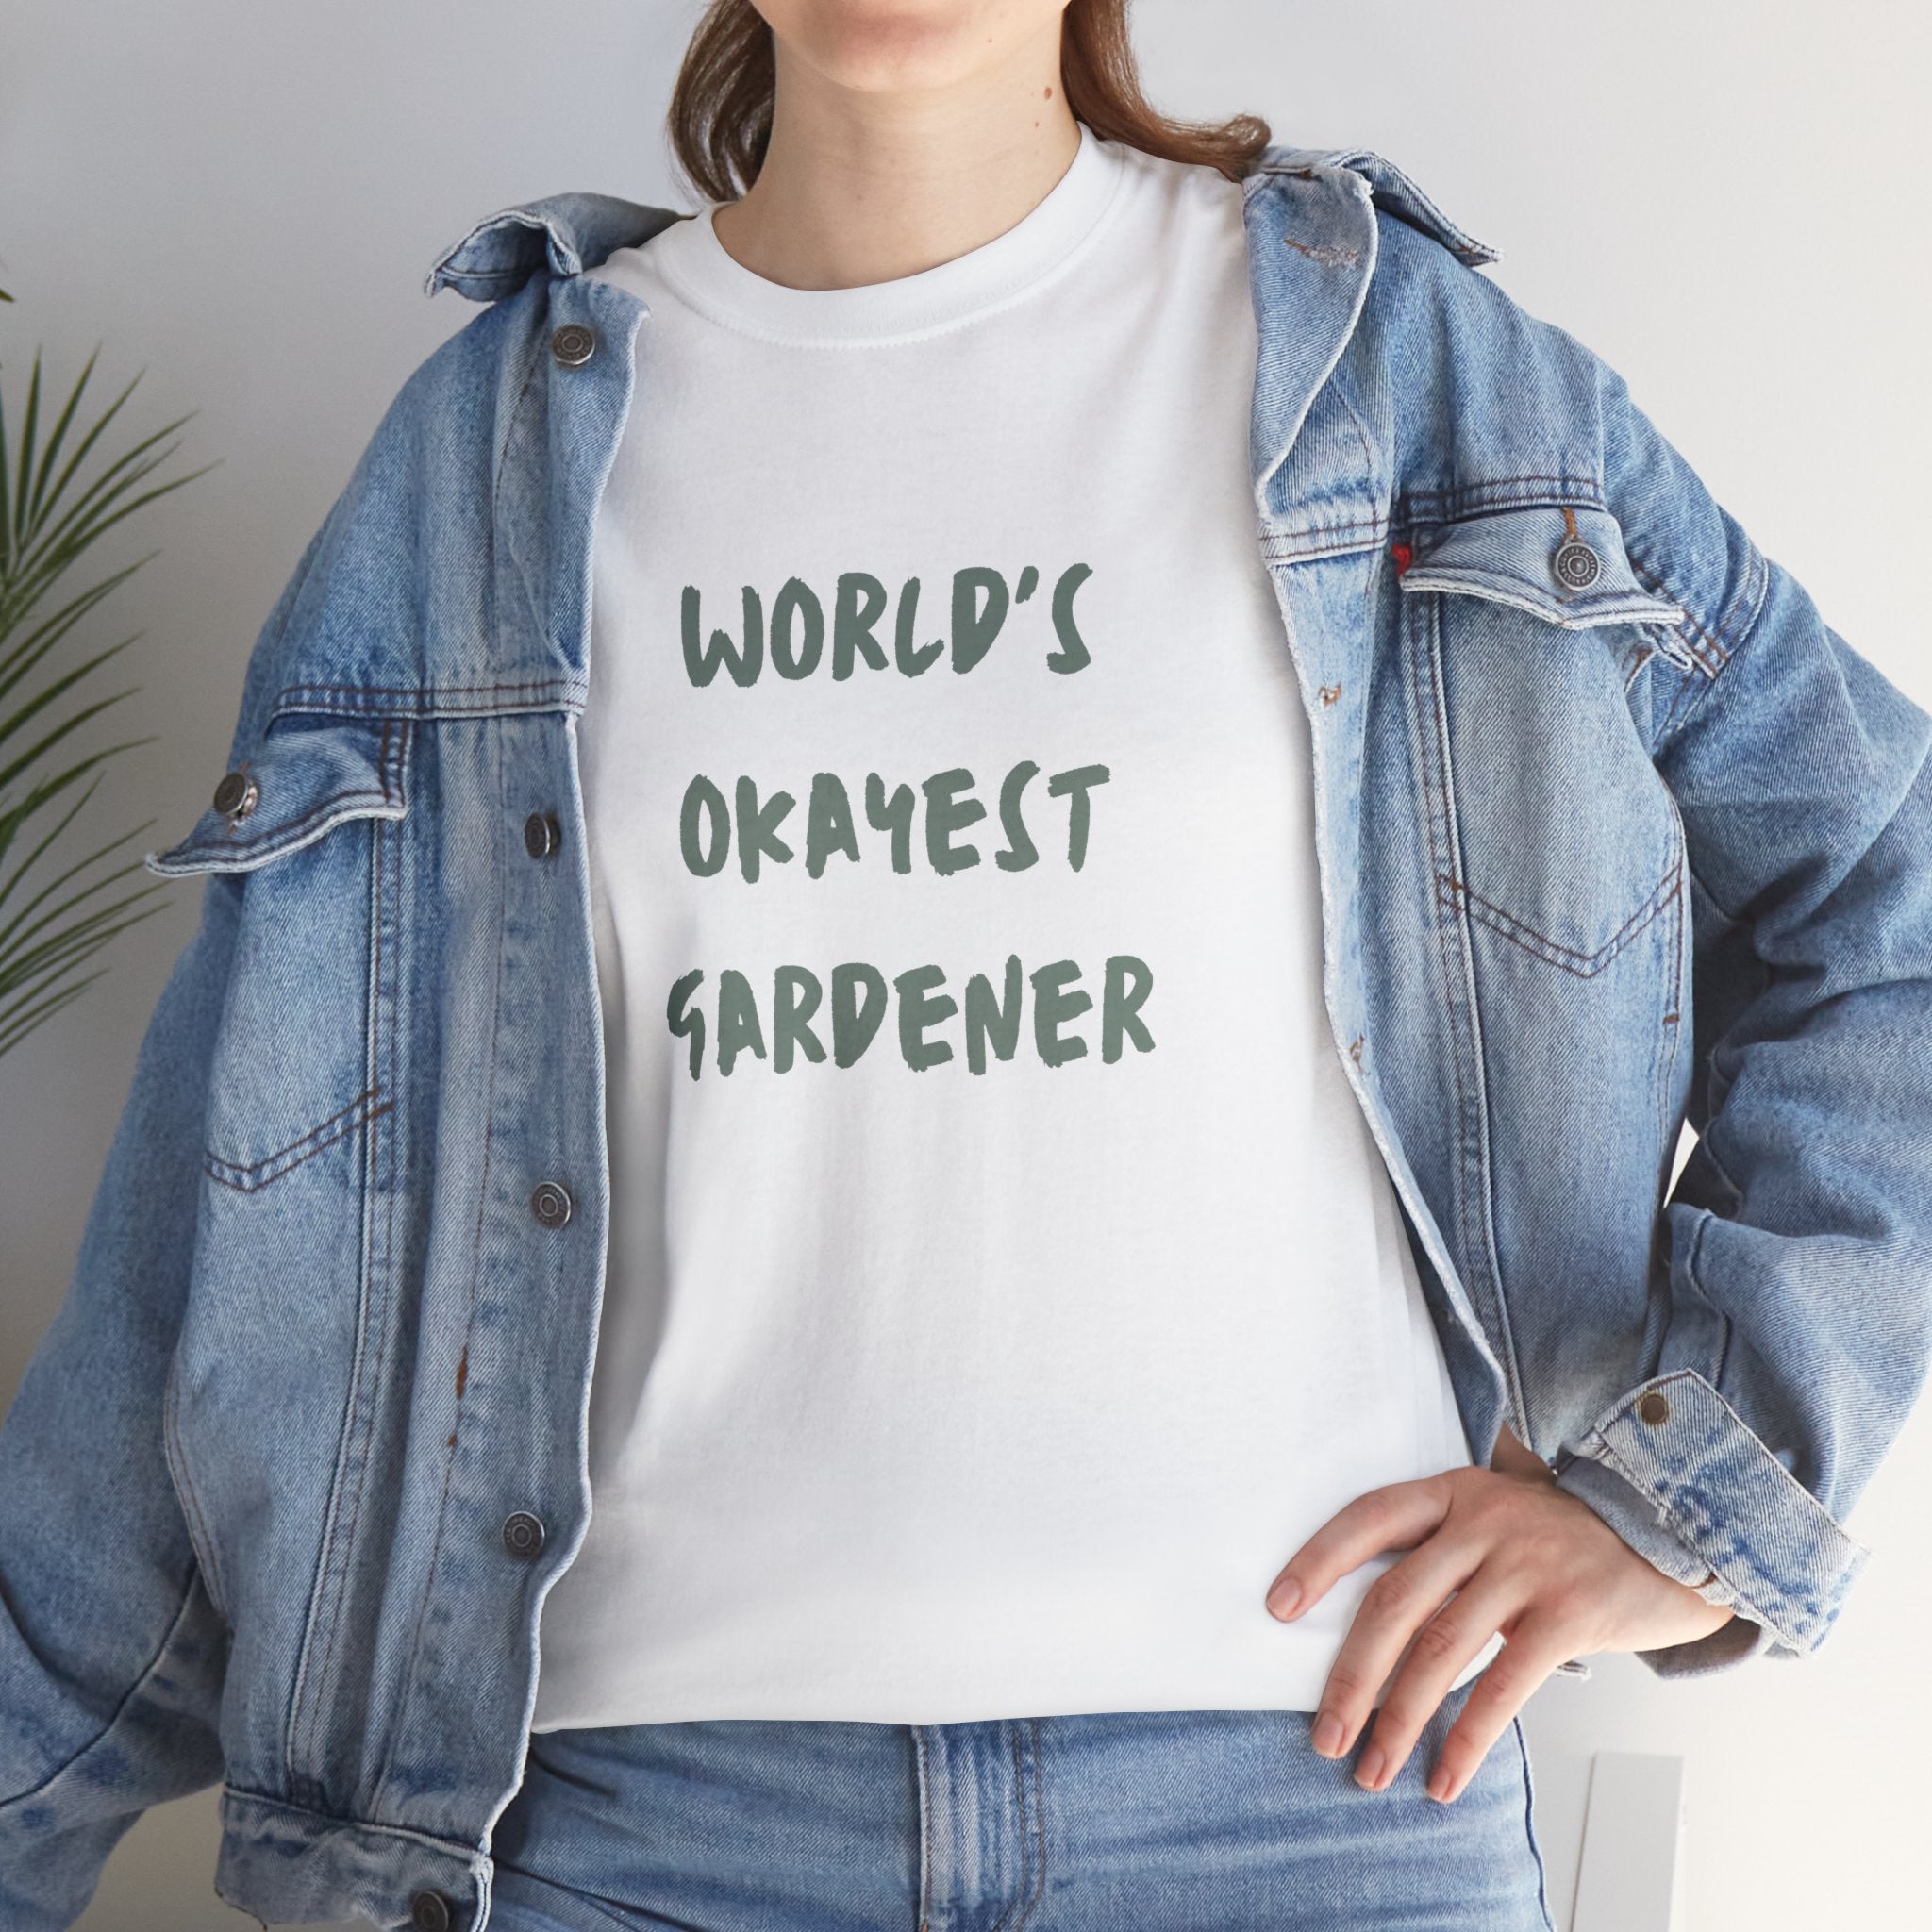 World's Okayest Gardener T-Shirt